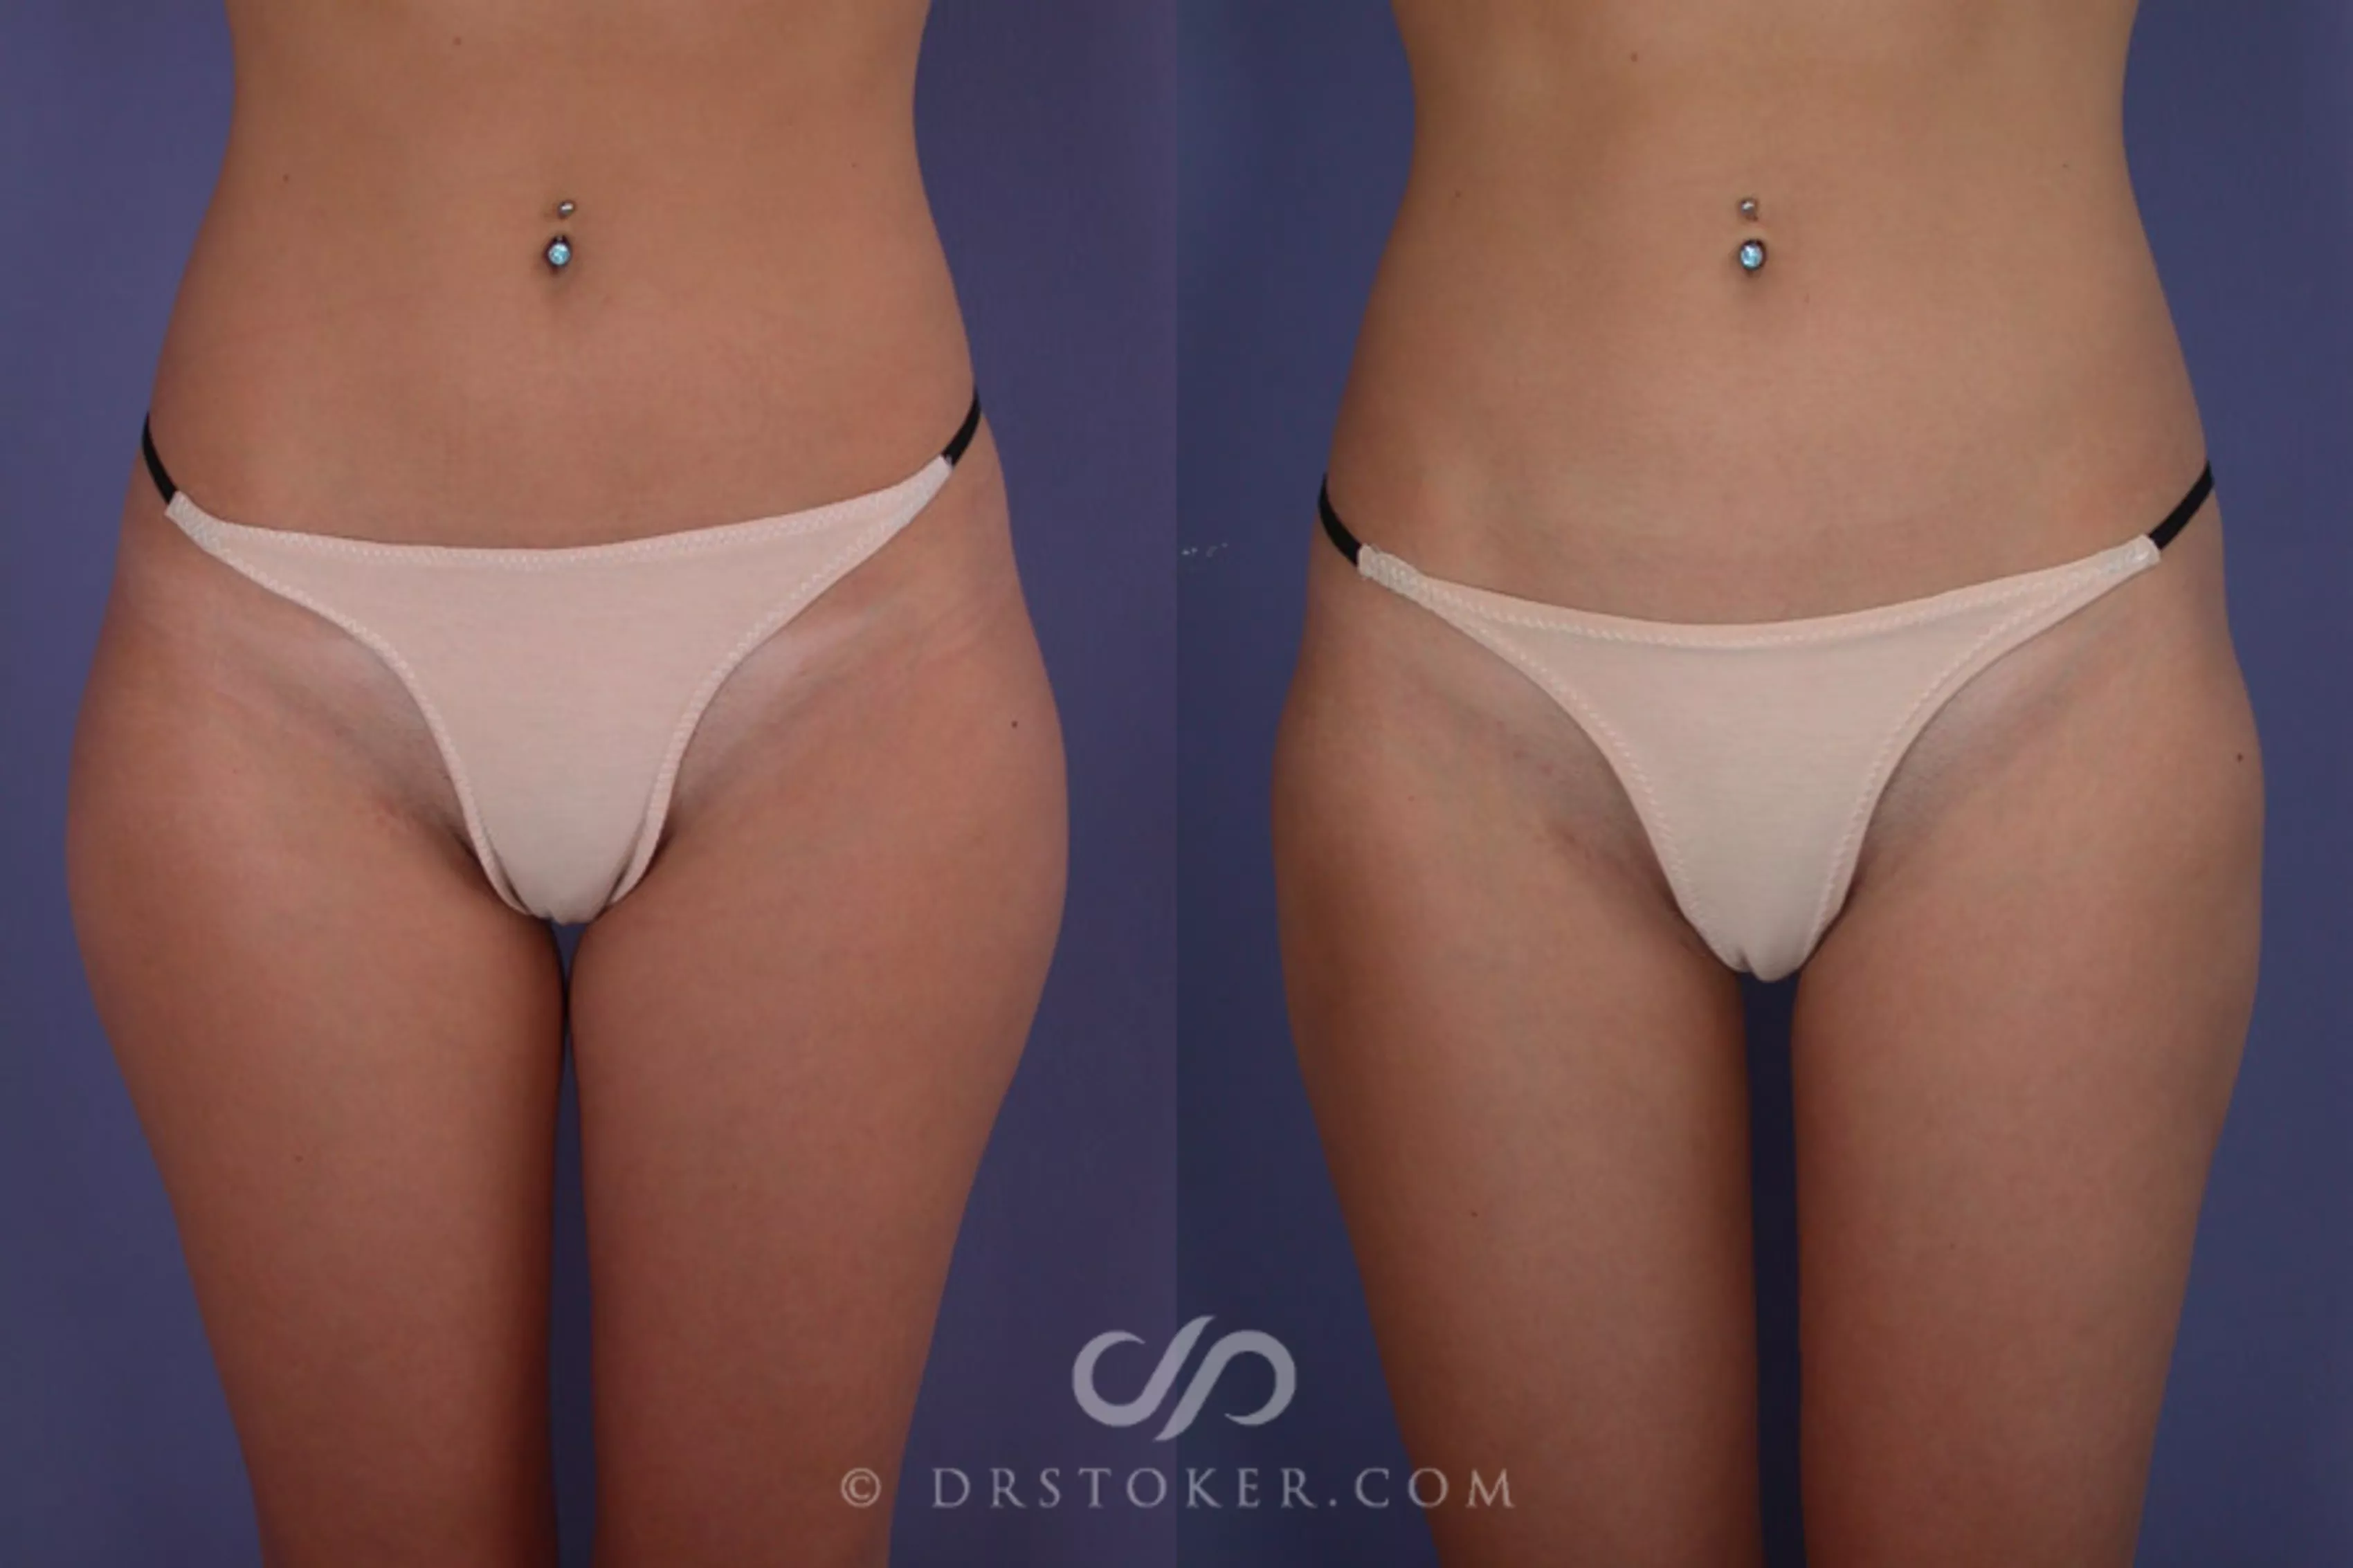 https://images.drstoker.com/content/images/liposuction-176-view-1-detail.webp